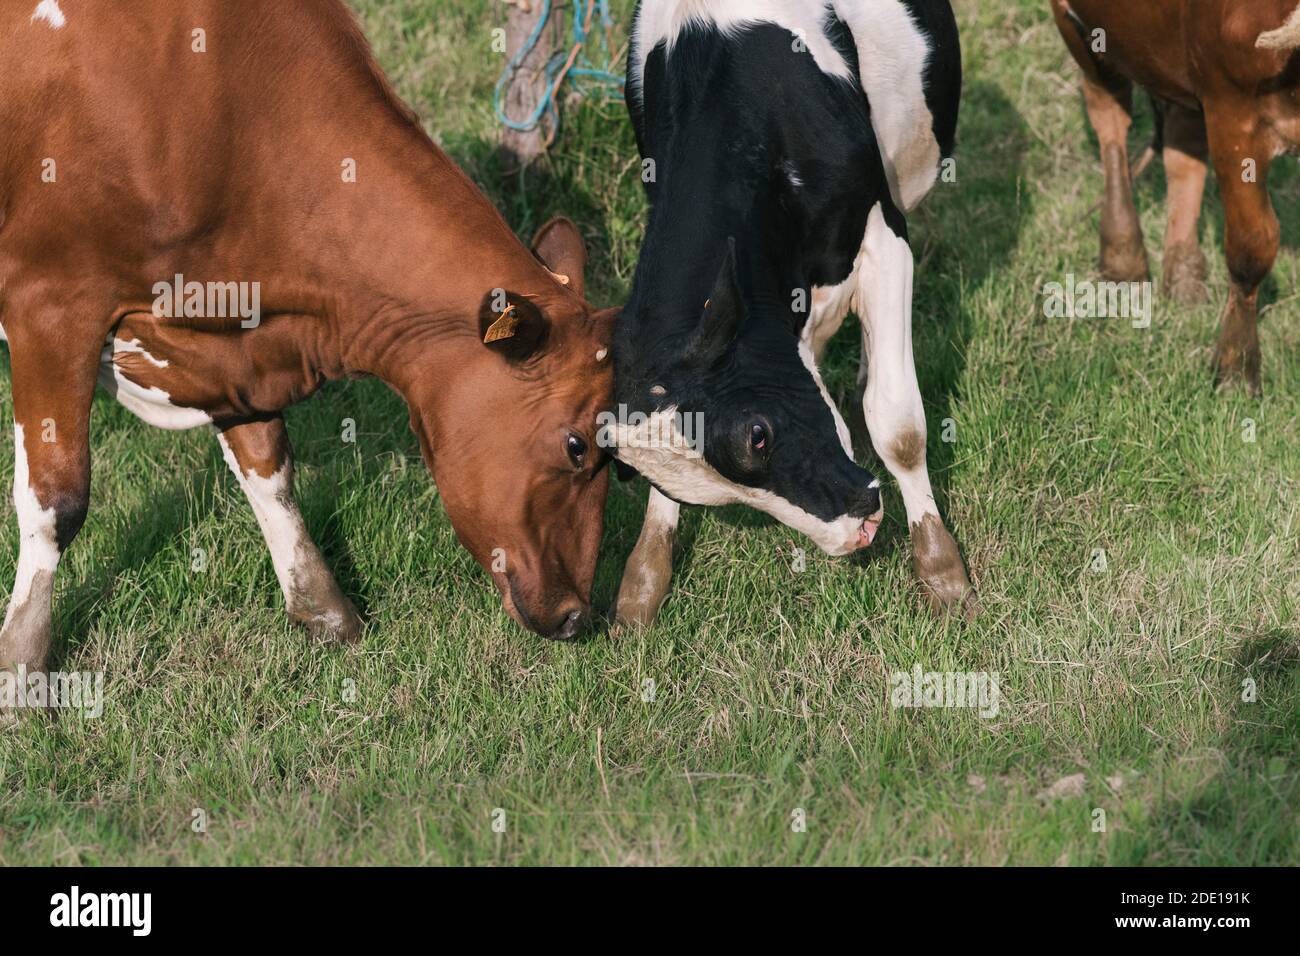 Deux vaches se combattent dans la ferme Banque D'Images